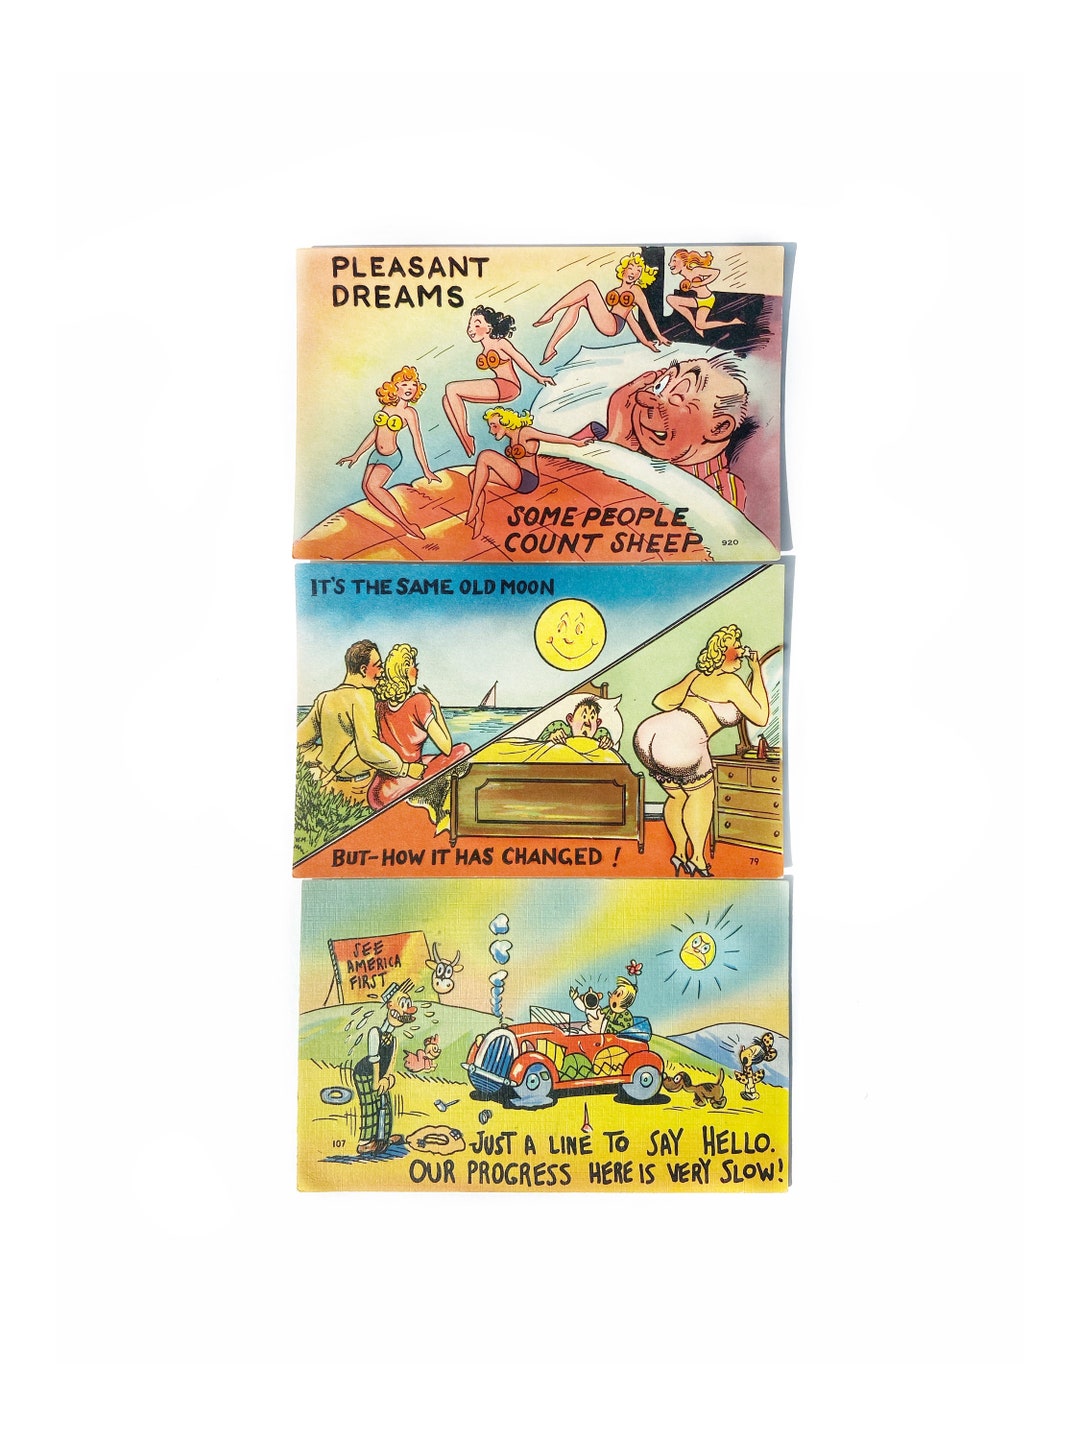 RARE Vintage Cartoon Adult Sex Humor Postcards Set of 3